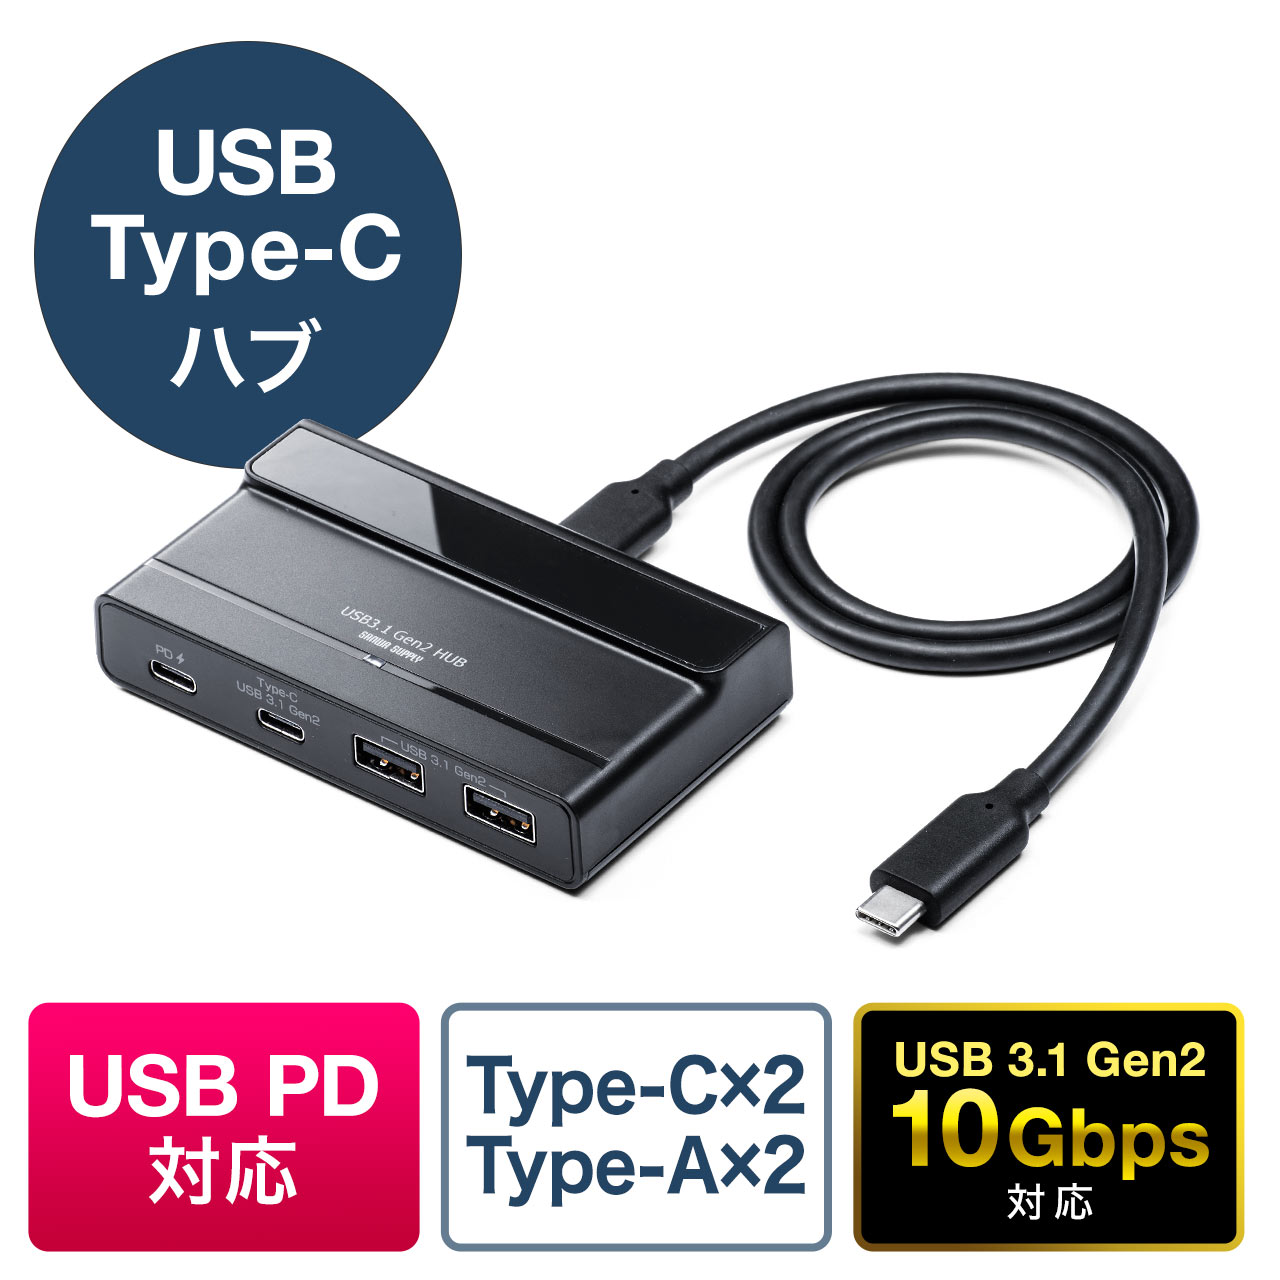 USBハブ 3.0 4ポート 薄型 Type-C タイプC USB ハブ小型 拡張 4in1 hub 変換アダプタ アルミ合金製 ノートPC パソコン 充電 TypeC